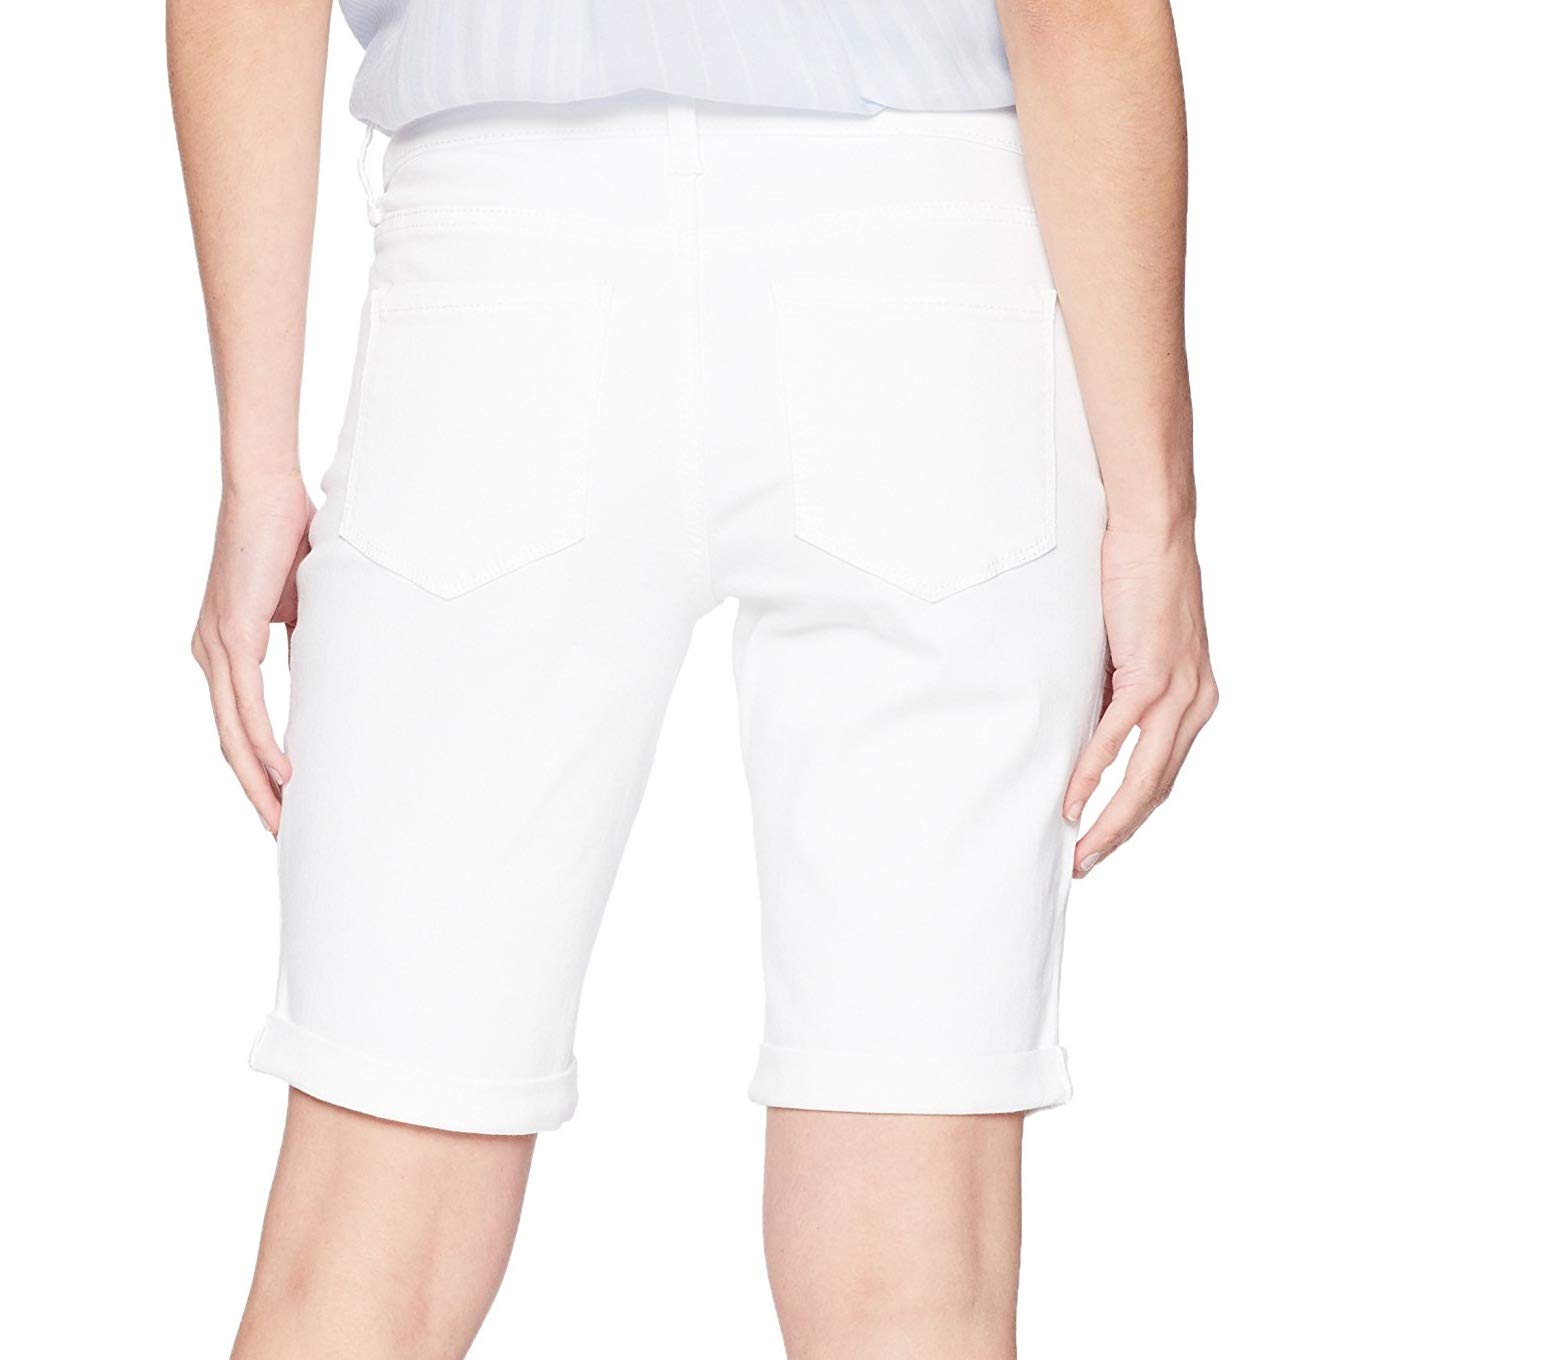 NYDJ Women's Petite Briella Jean Shorts with Roll Cuffs | Slimming & Flattering Fit